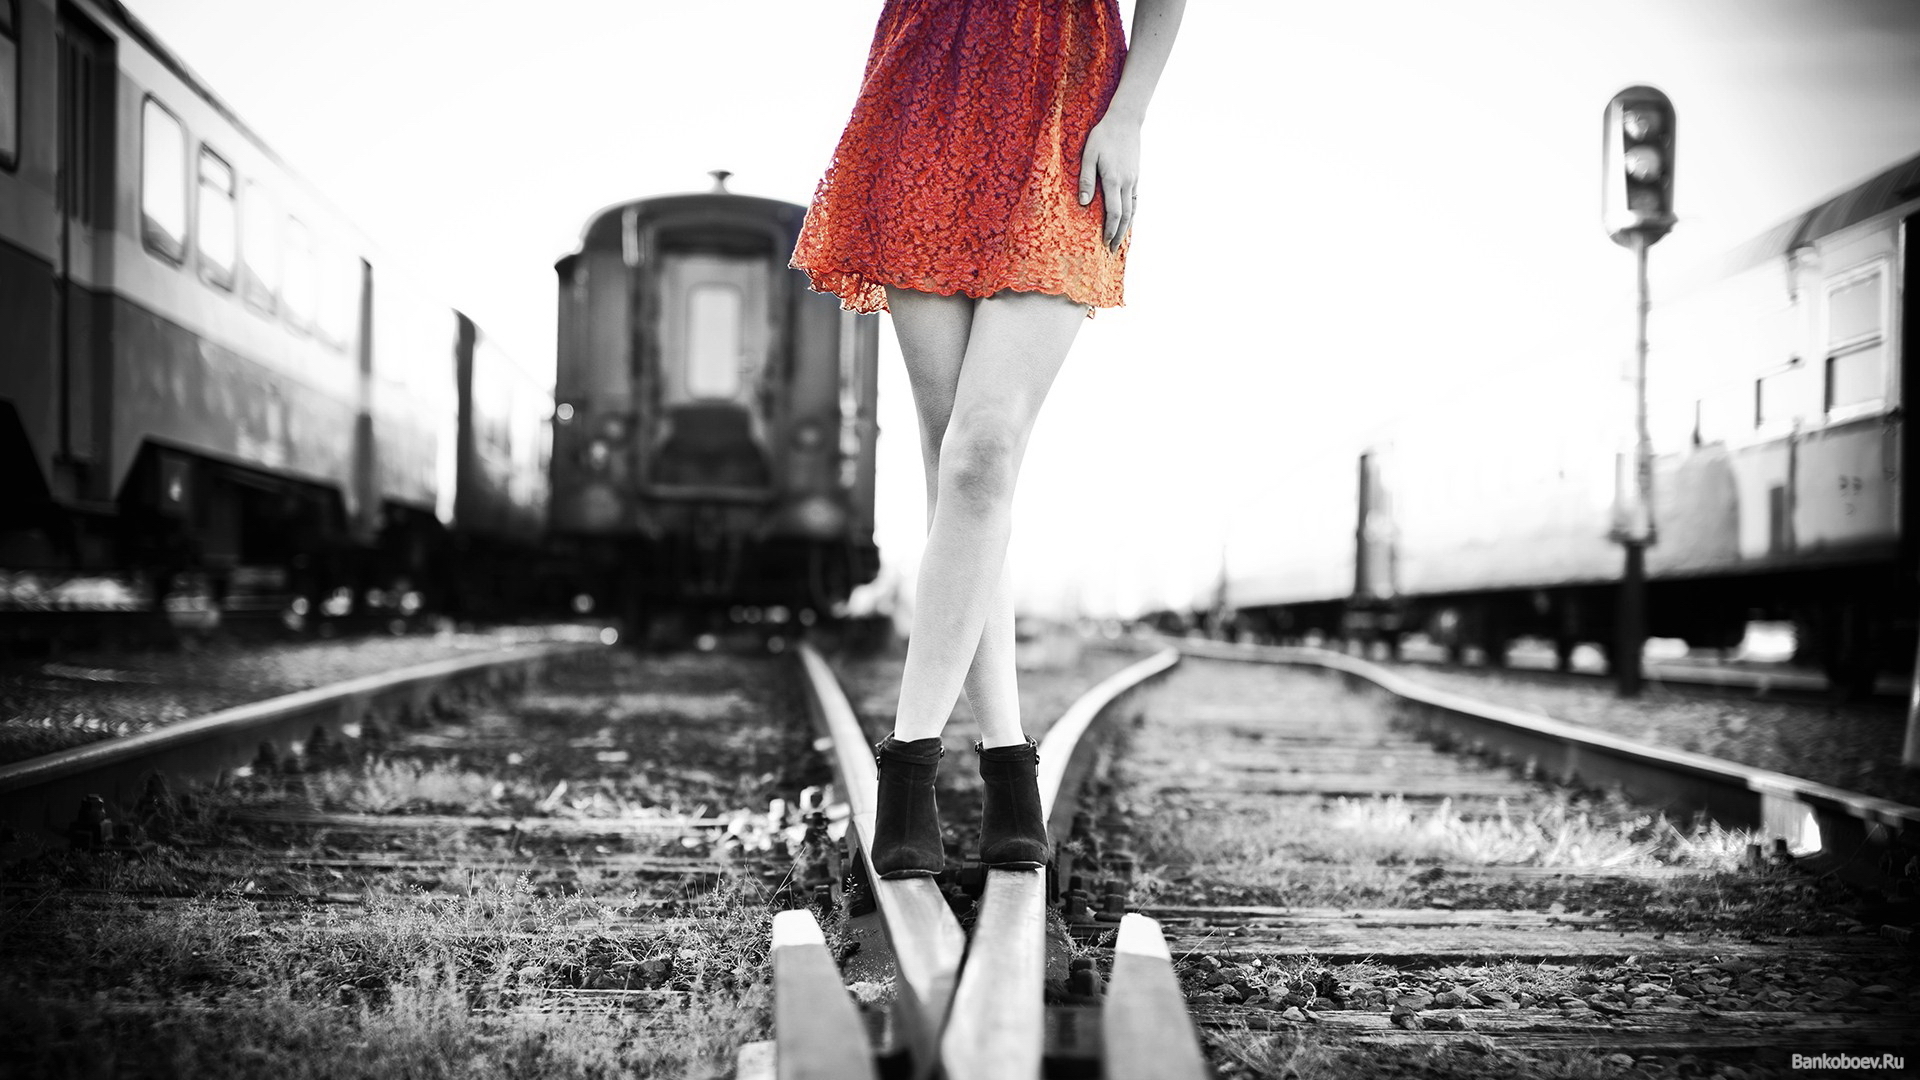 Ran train girl